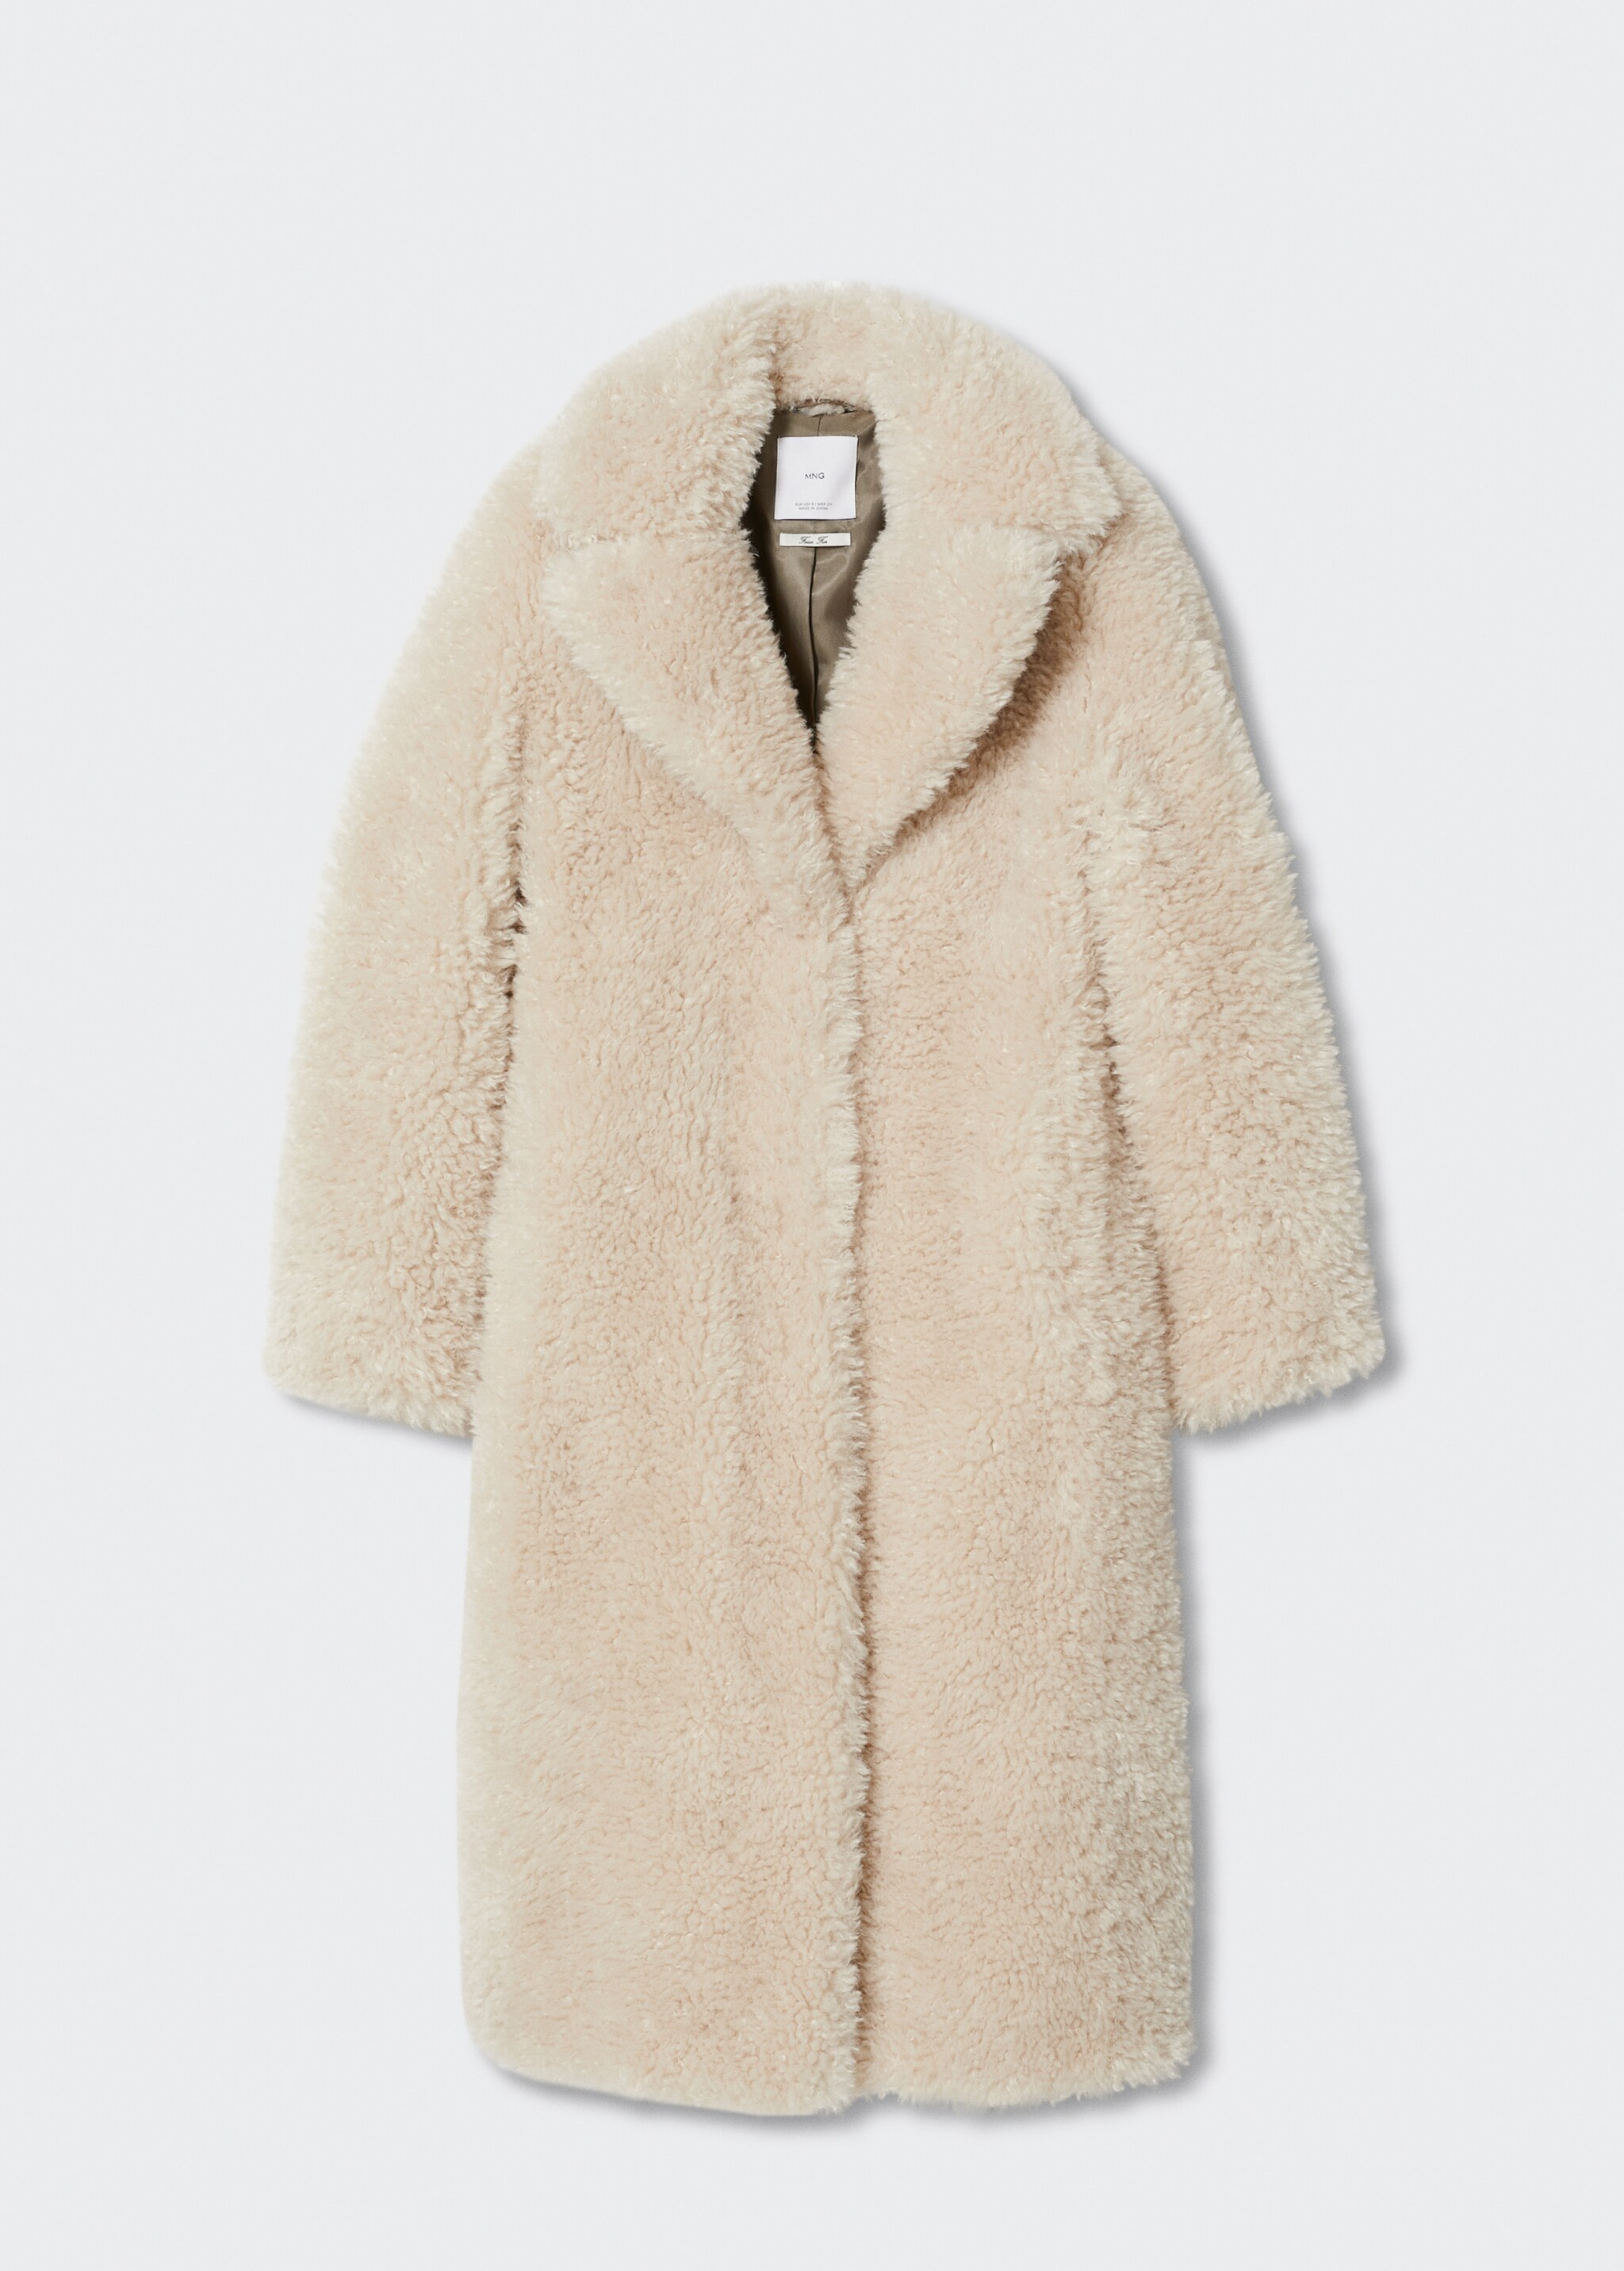 Fur bouclé coat - Article without model